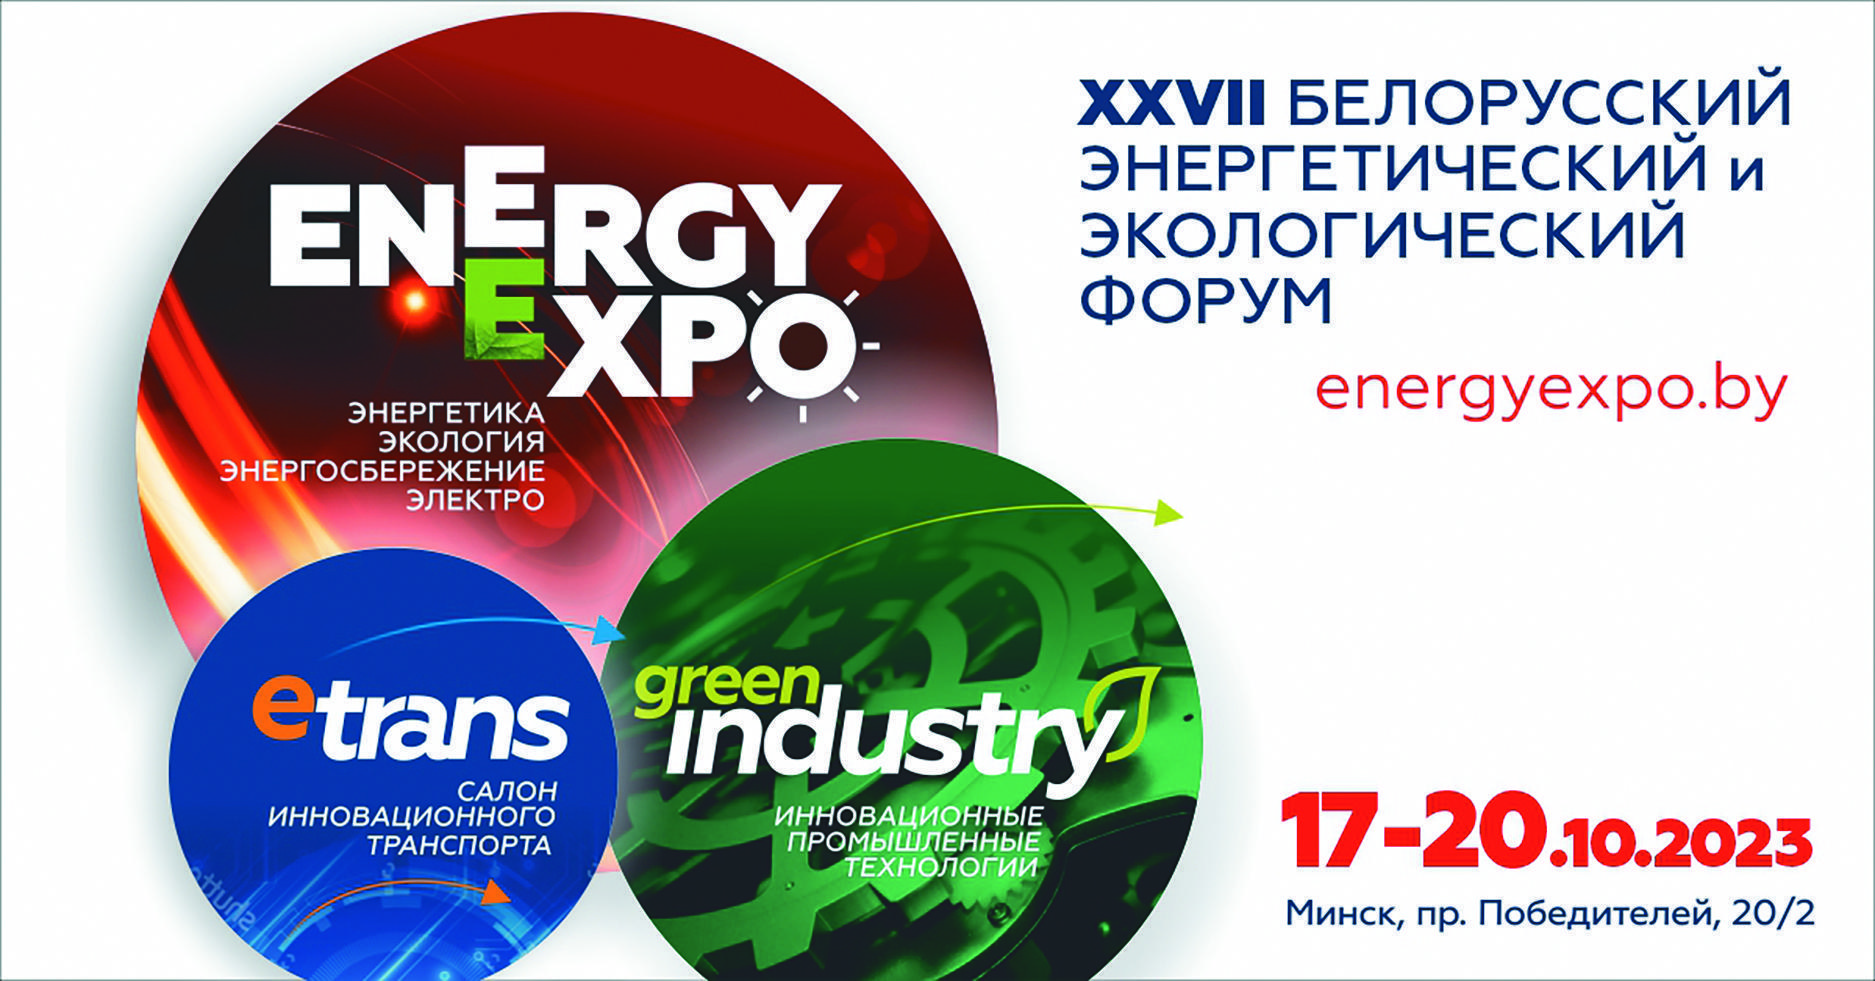 Более 200 компаний и организаций примут участие в форуме «Energy Expo»